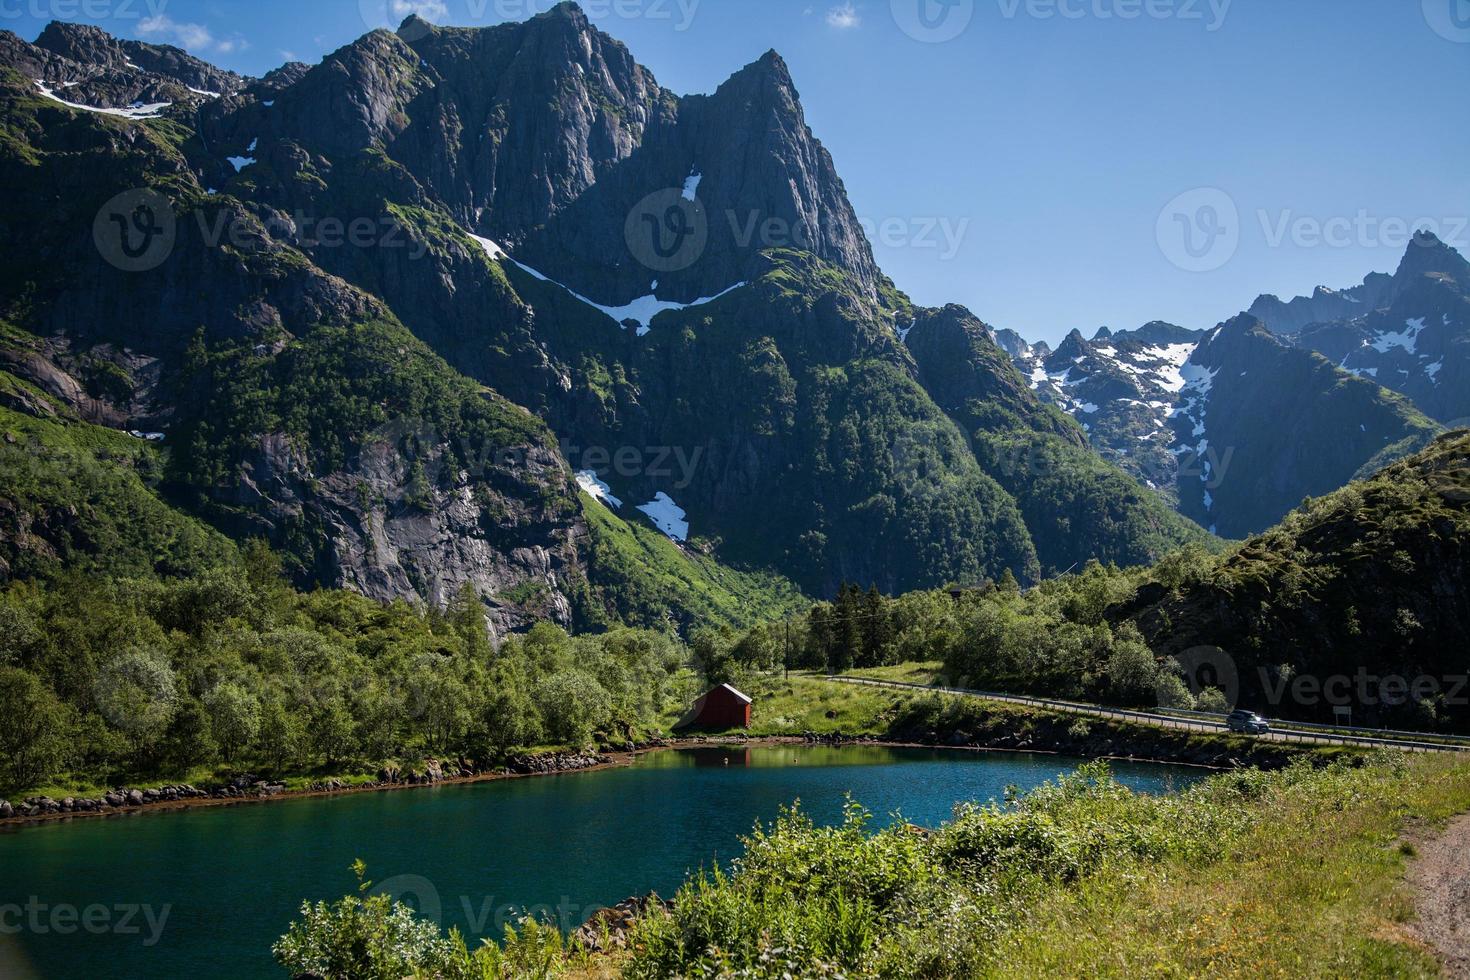 vues depuis les îles lofoten en norvège photo